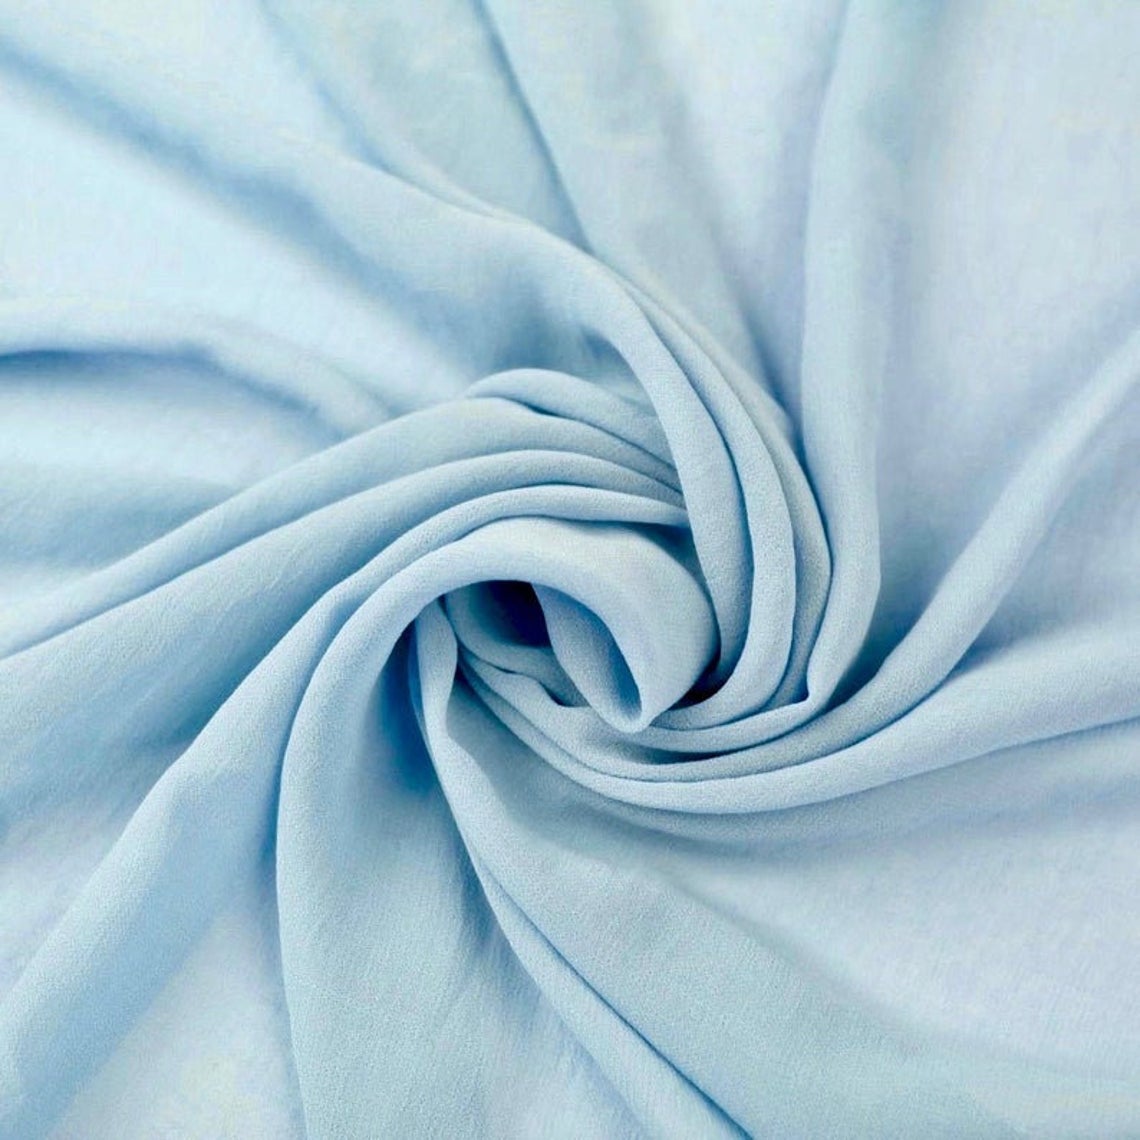 white chiffon fabric